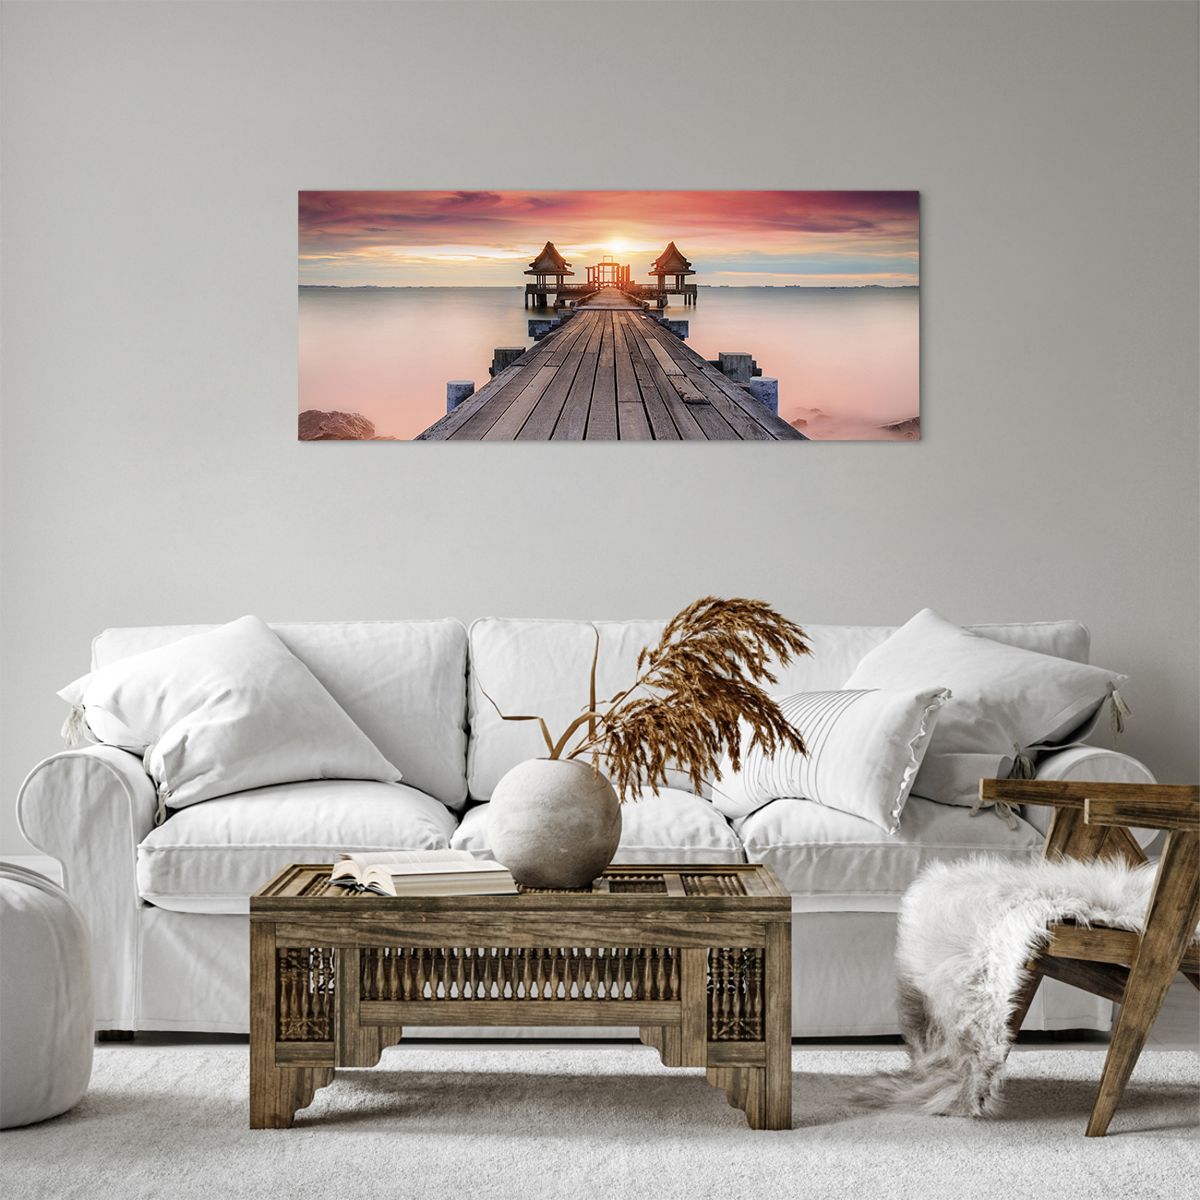 Bild auf Leinwand Landschaft, Bild auf Leinwand Holzsteg, Bild auf Leinwand Meer, Bild auf Leinwand Der Sonnenuntergang, Bild auf Leinwand Horizont